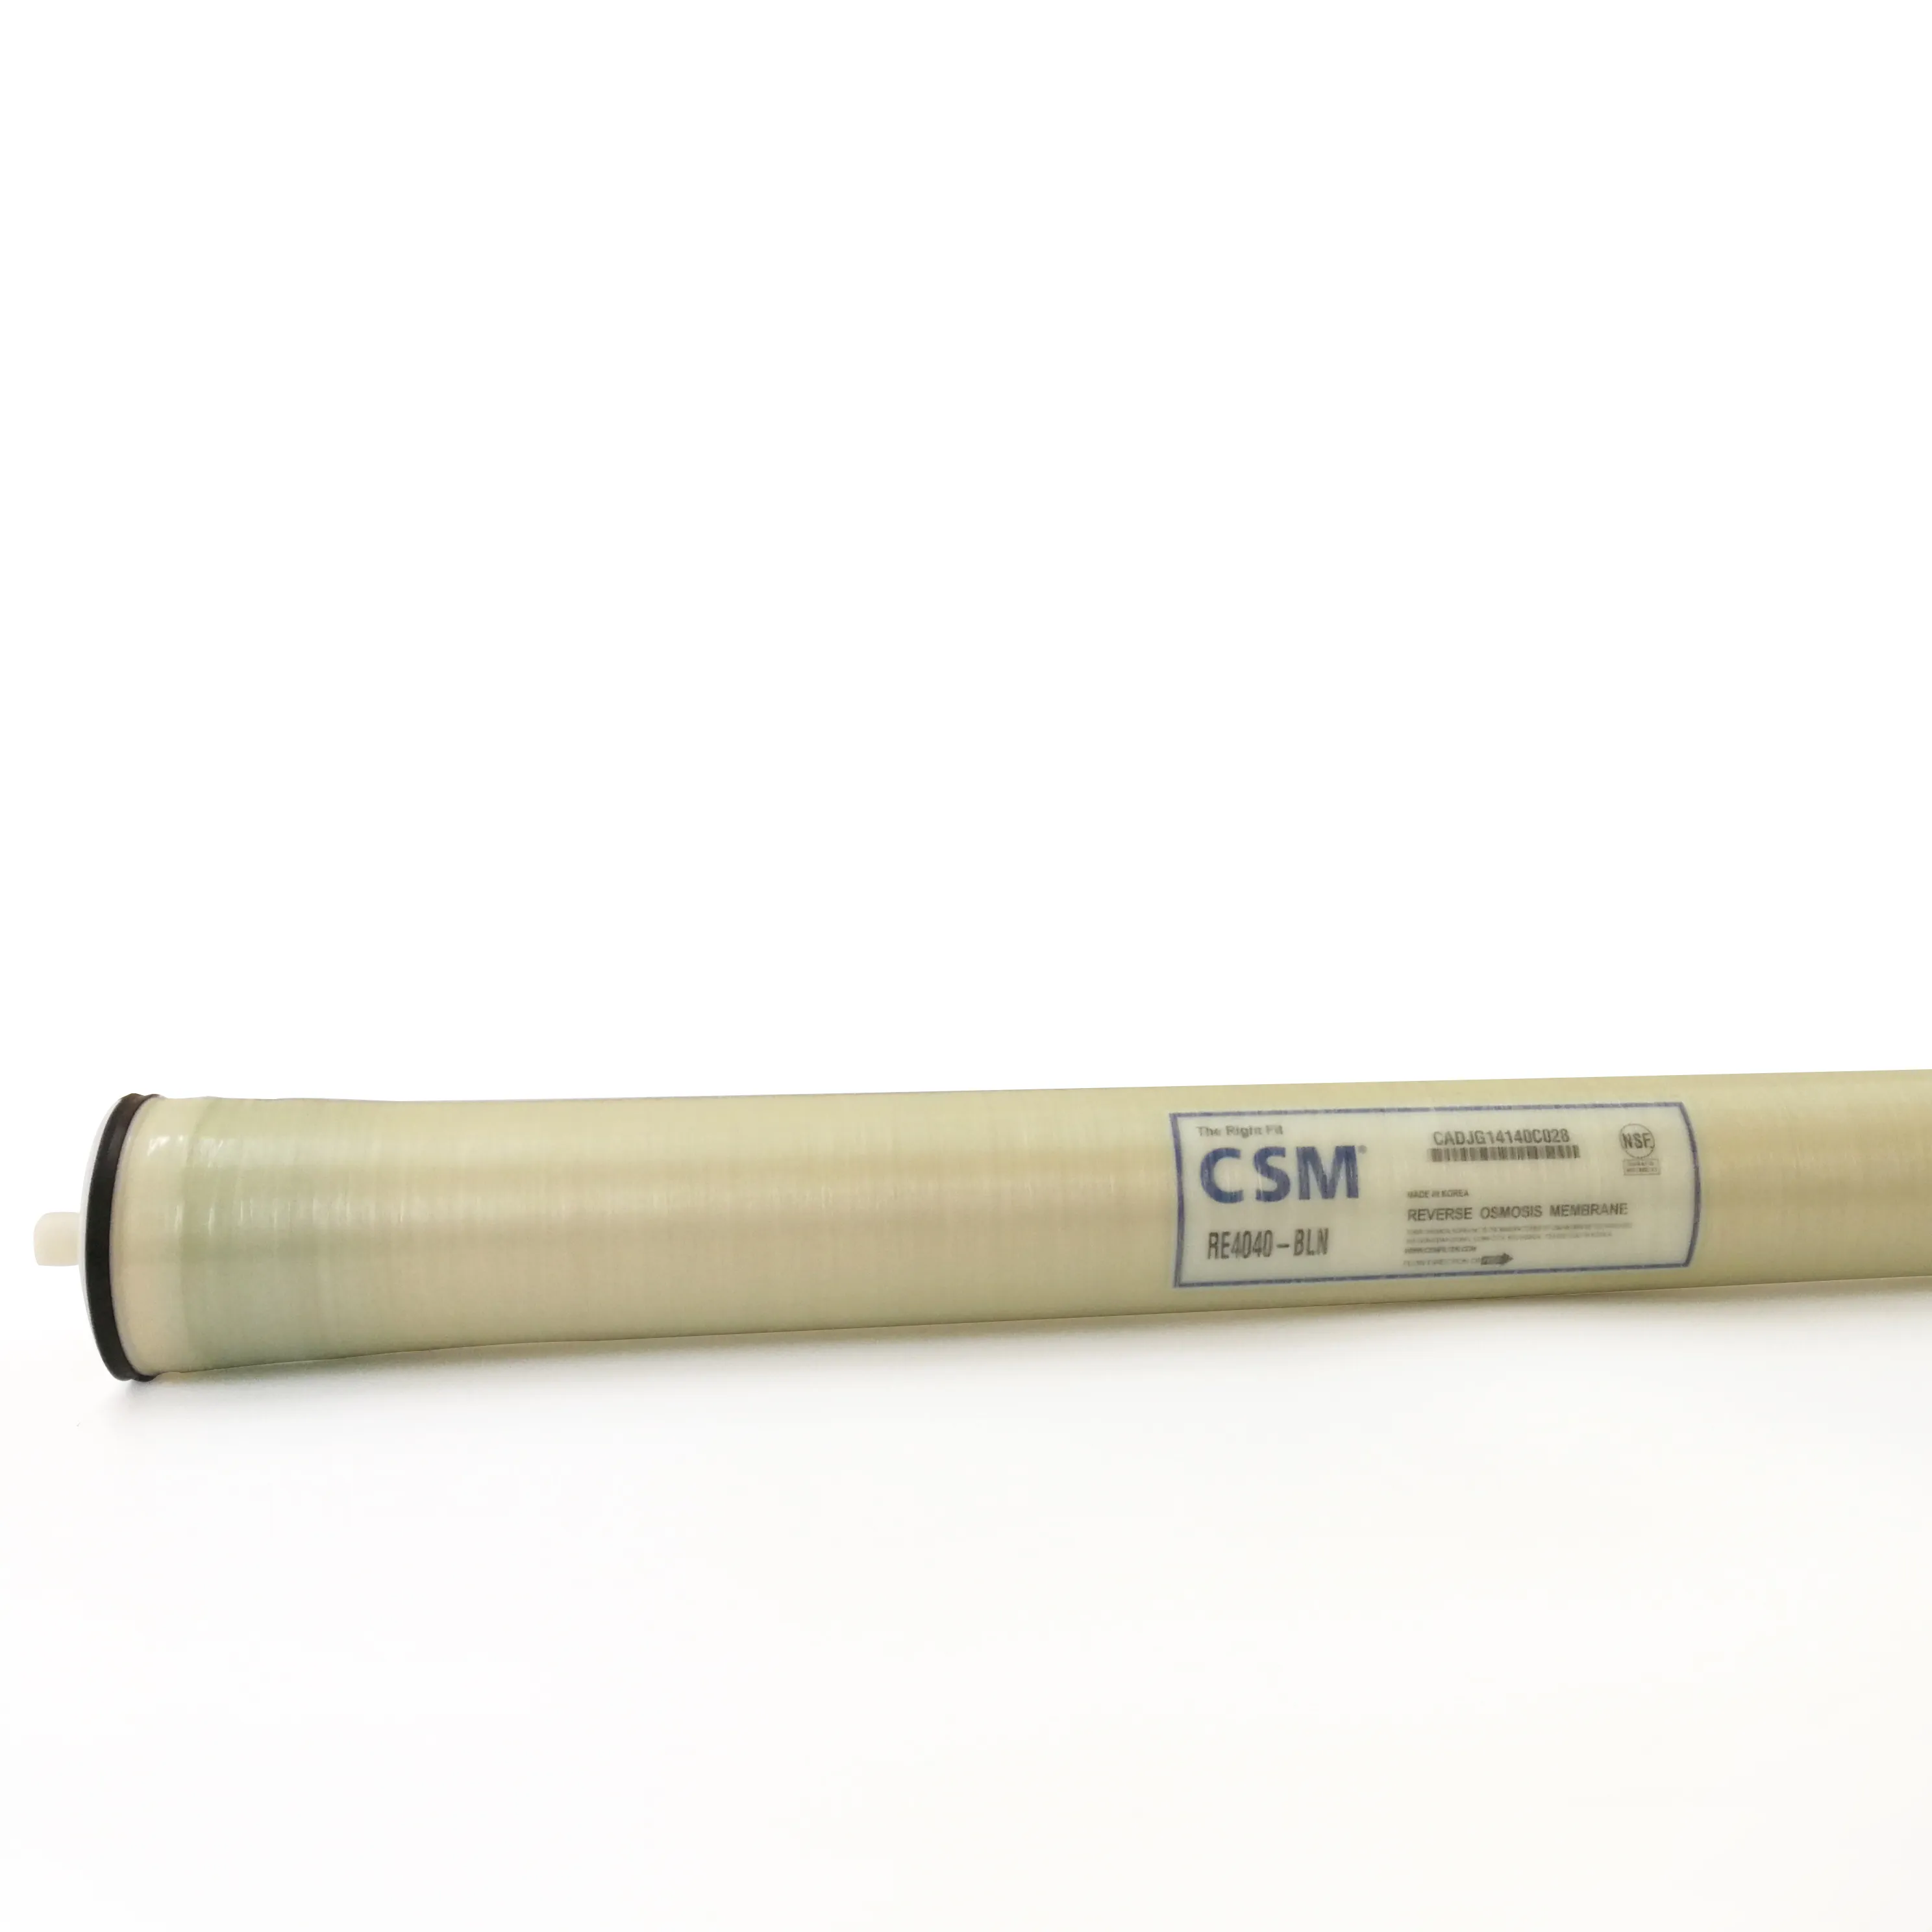 CSM мембраны RO RE4040-BLN для водопроводной воды